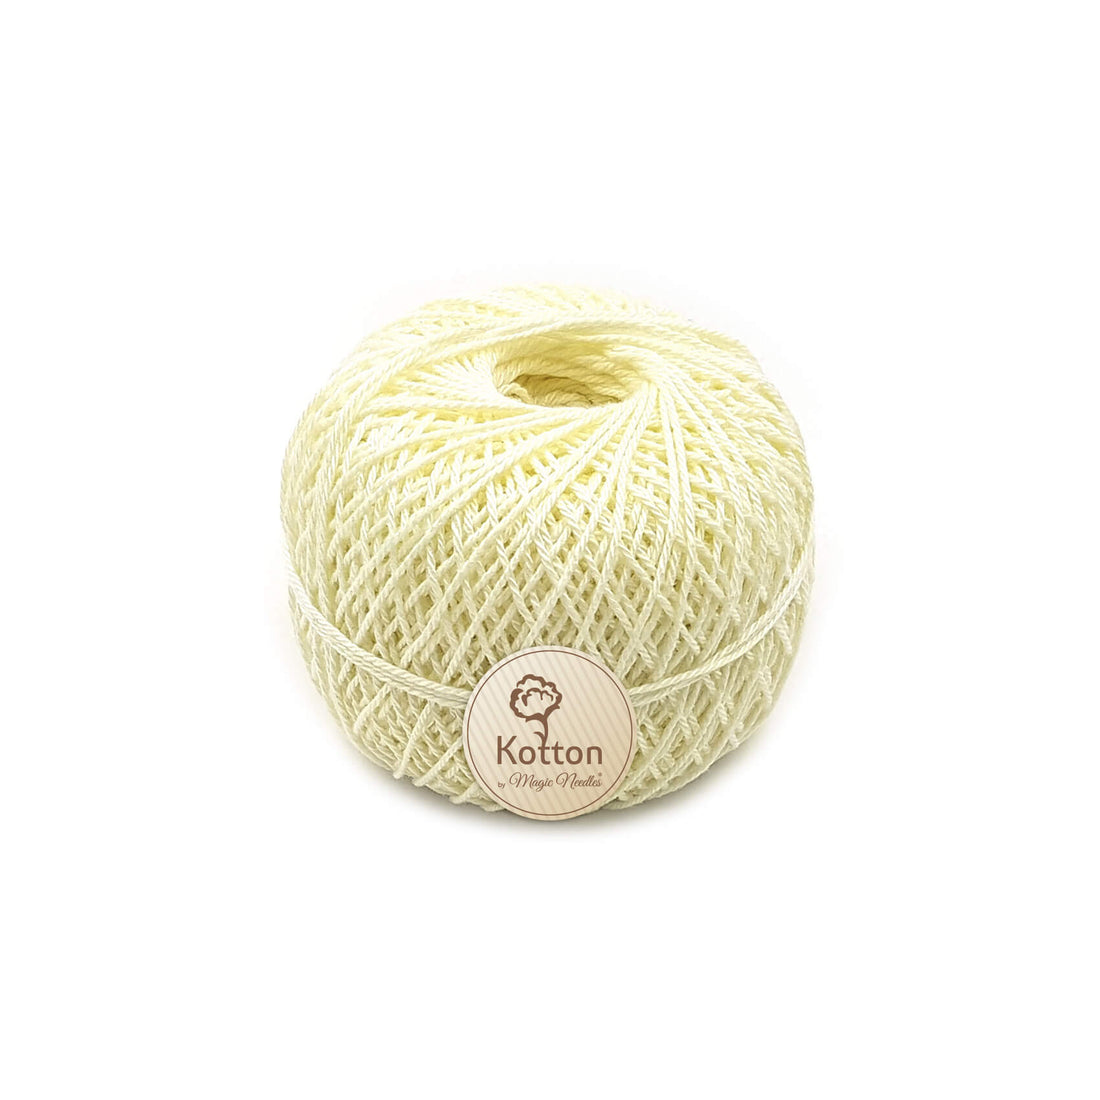 Kotton 3 ply Mercerised Cotton Yarn - Mild Yellow 03